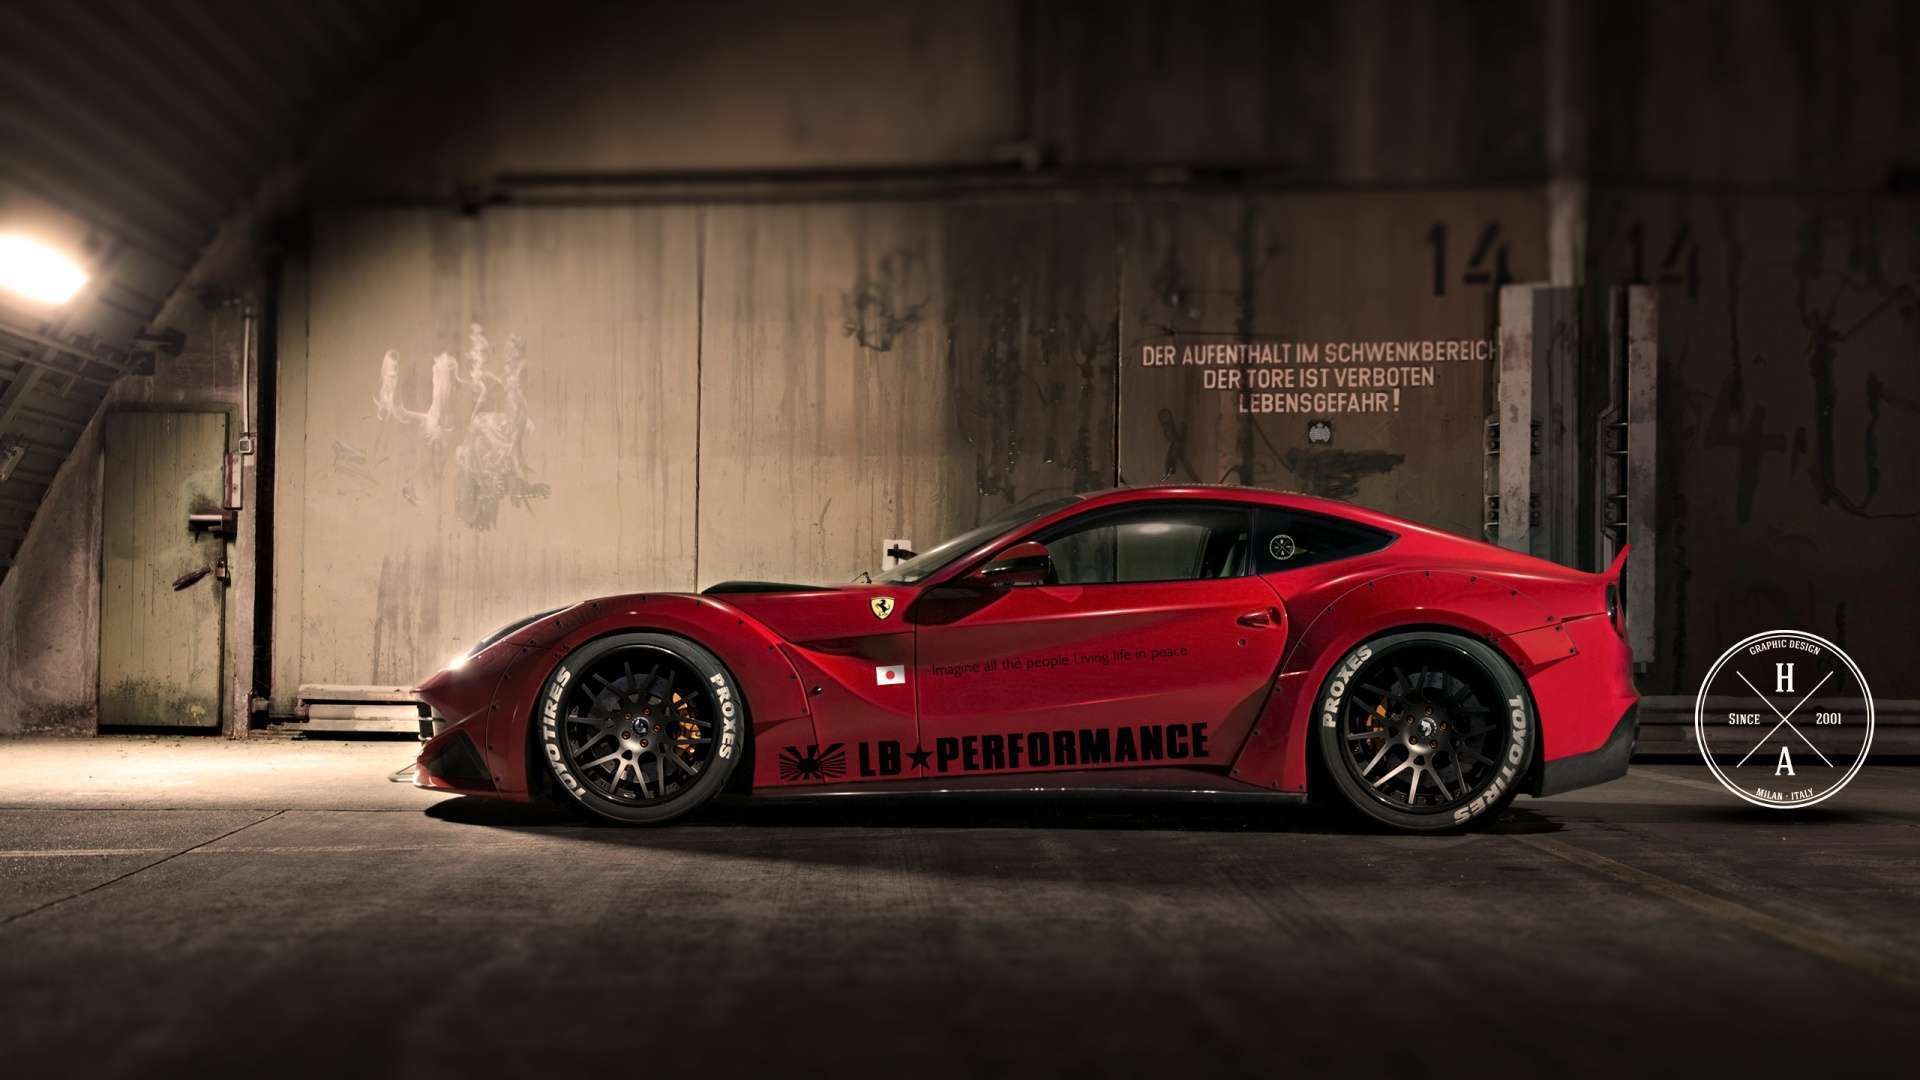 Wallpaper HD 1080p Ferrari Car